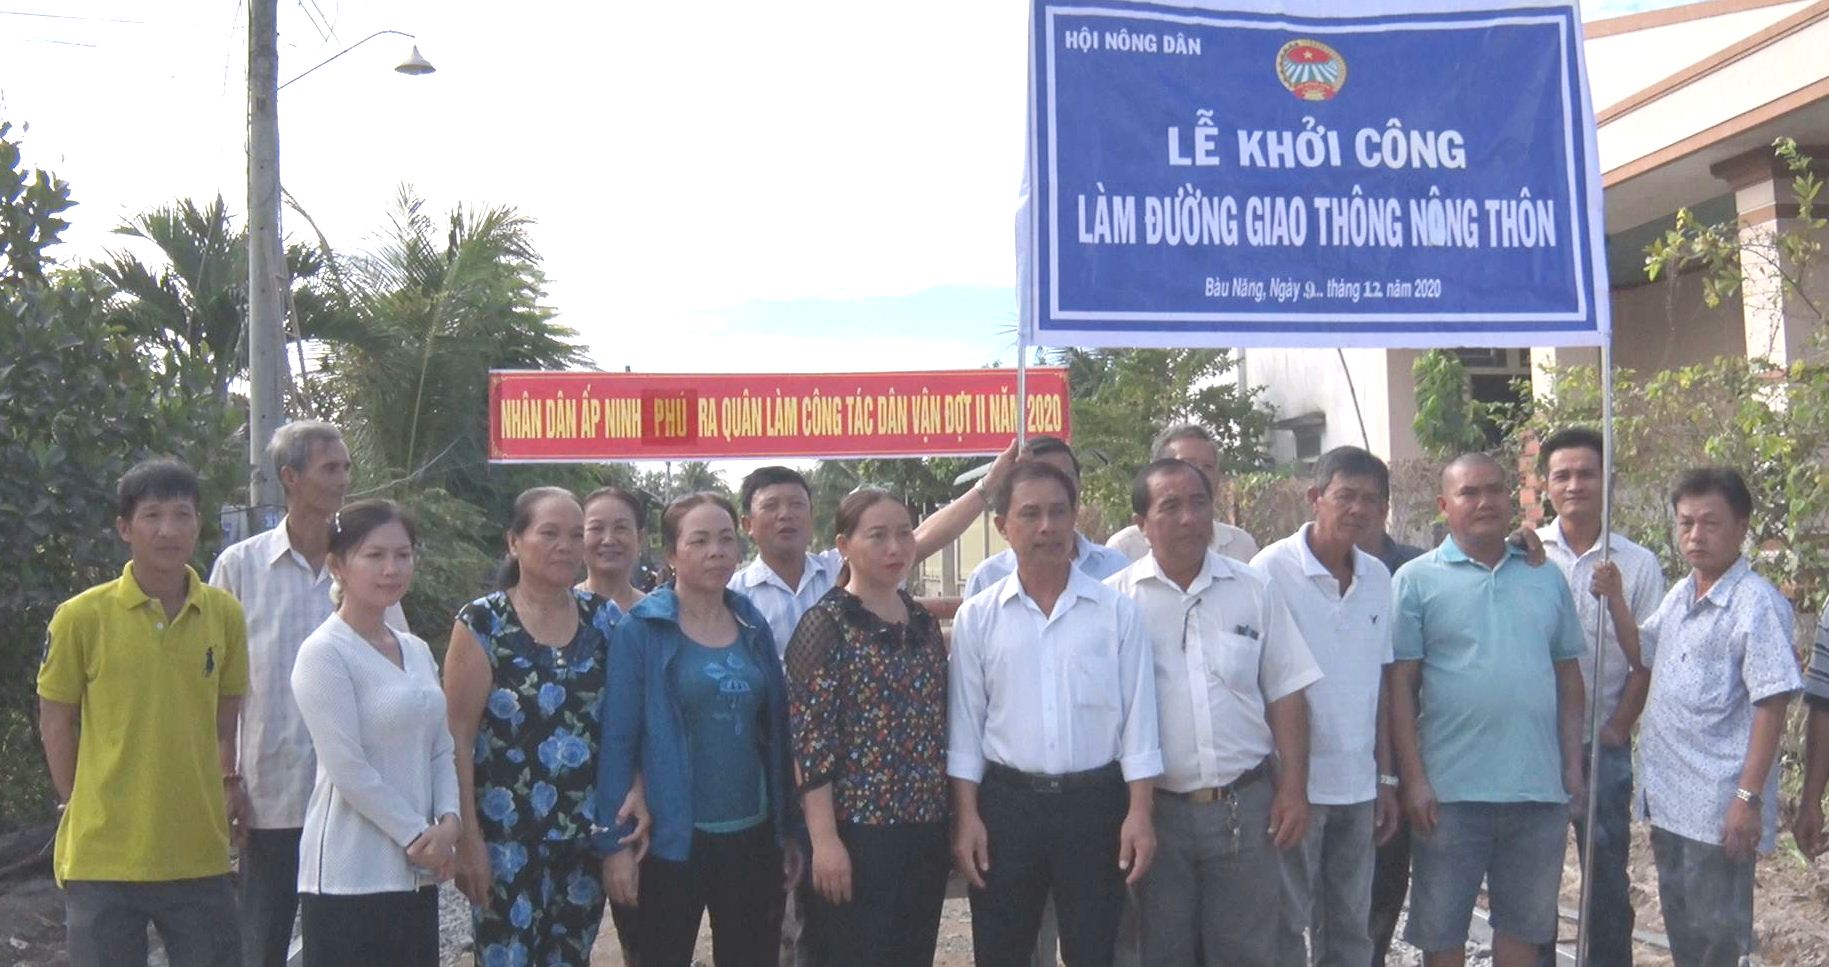 Xã Bàu Năng huyện Dương Minh Châu khởi công làm đường  giao thông nông thôn